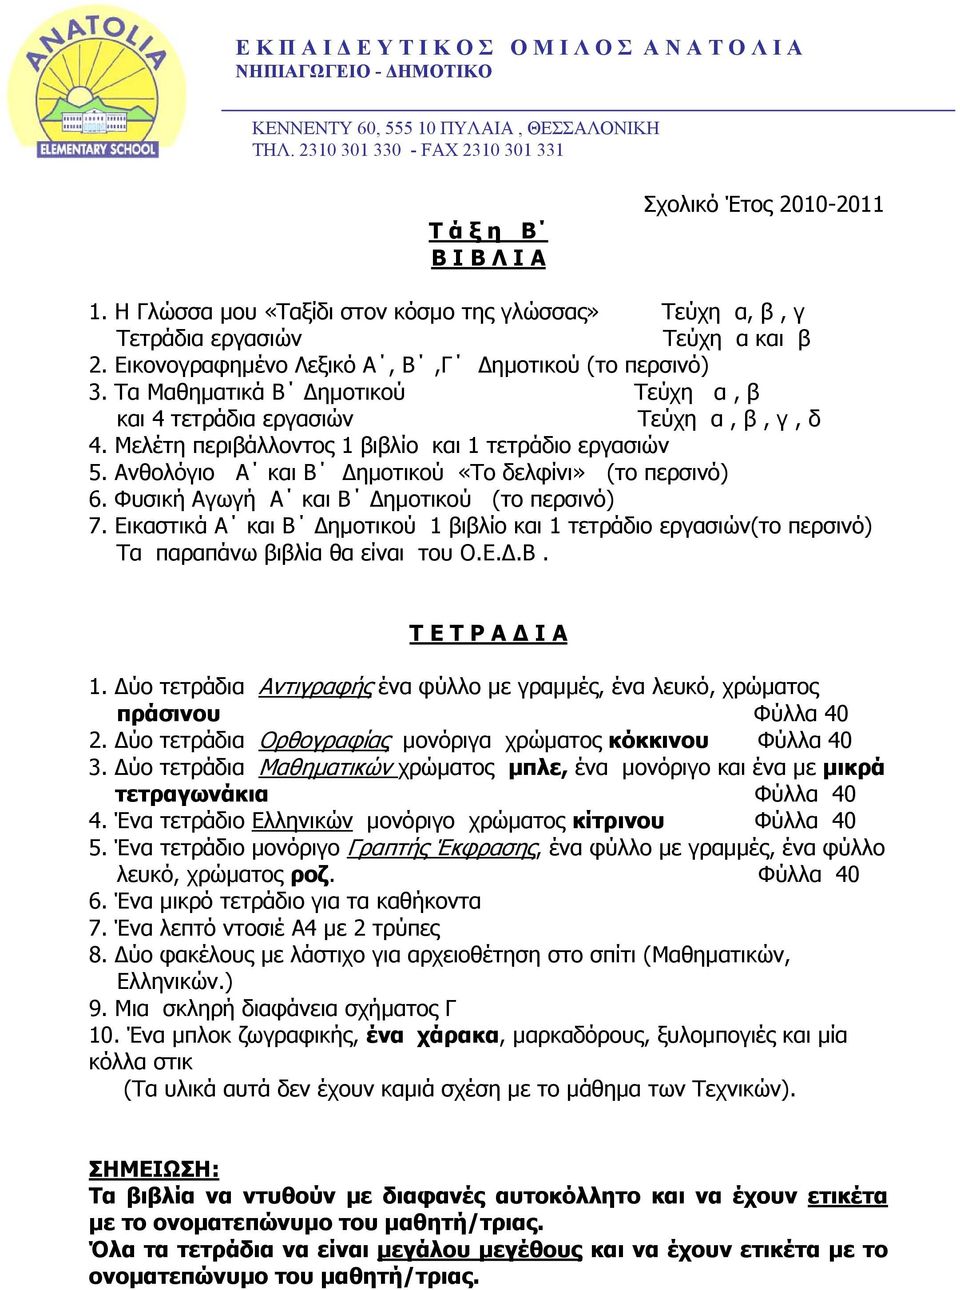 Ανθολόγιο Α και Β ηµοτικού «Το δελφίνι» (το περσινό) 6. Φυσική Αγωγή Α και Β ηµοτικού (το περσινό) 7.